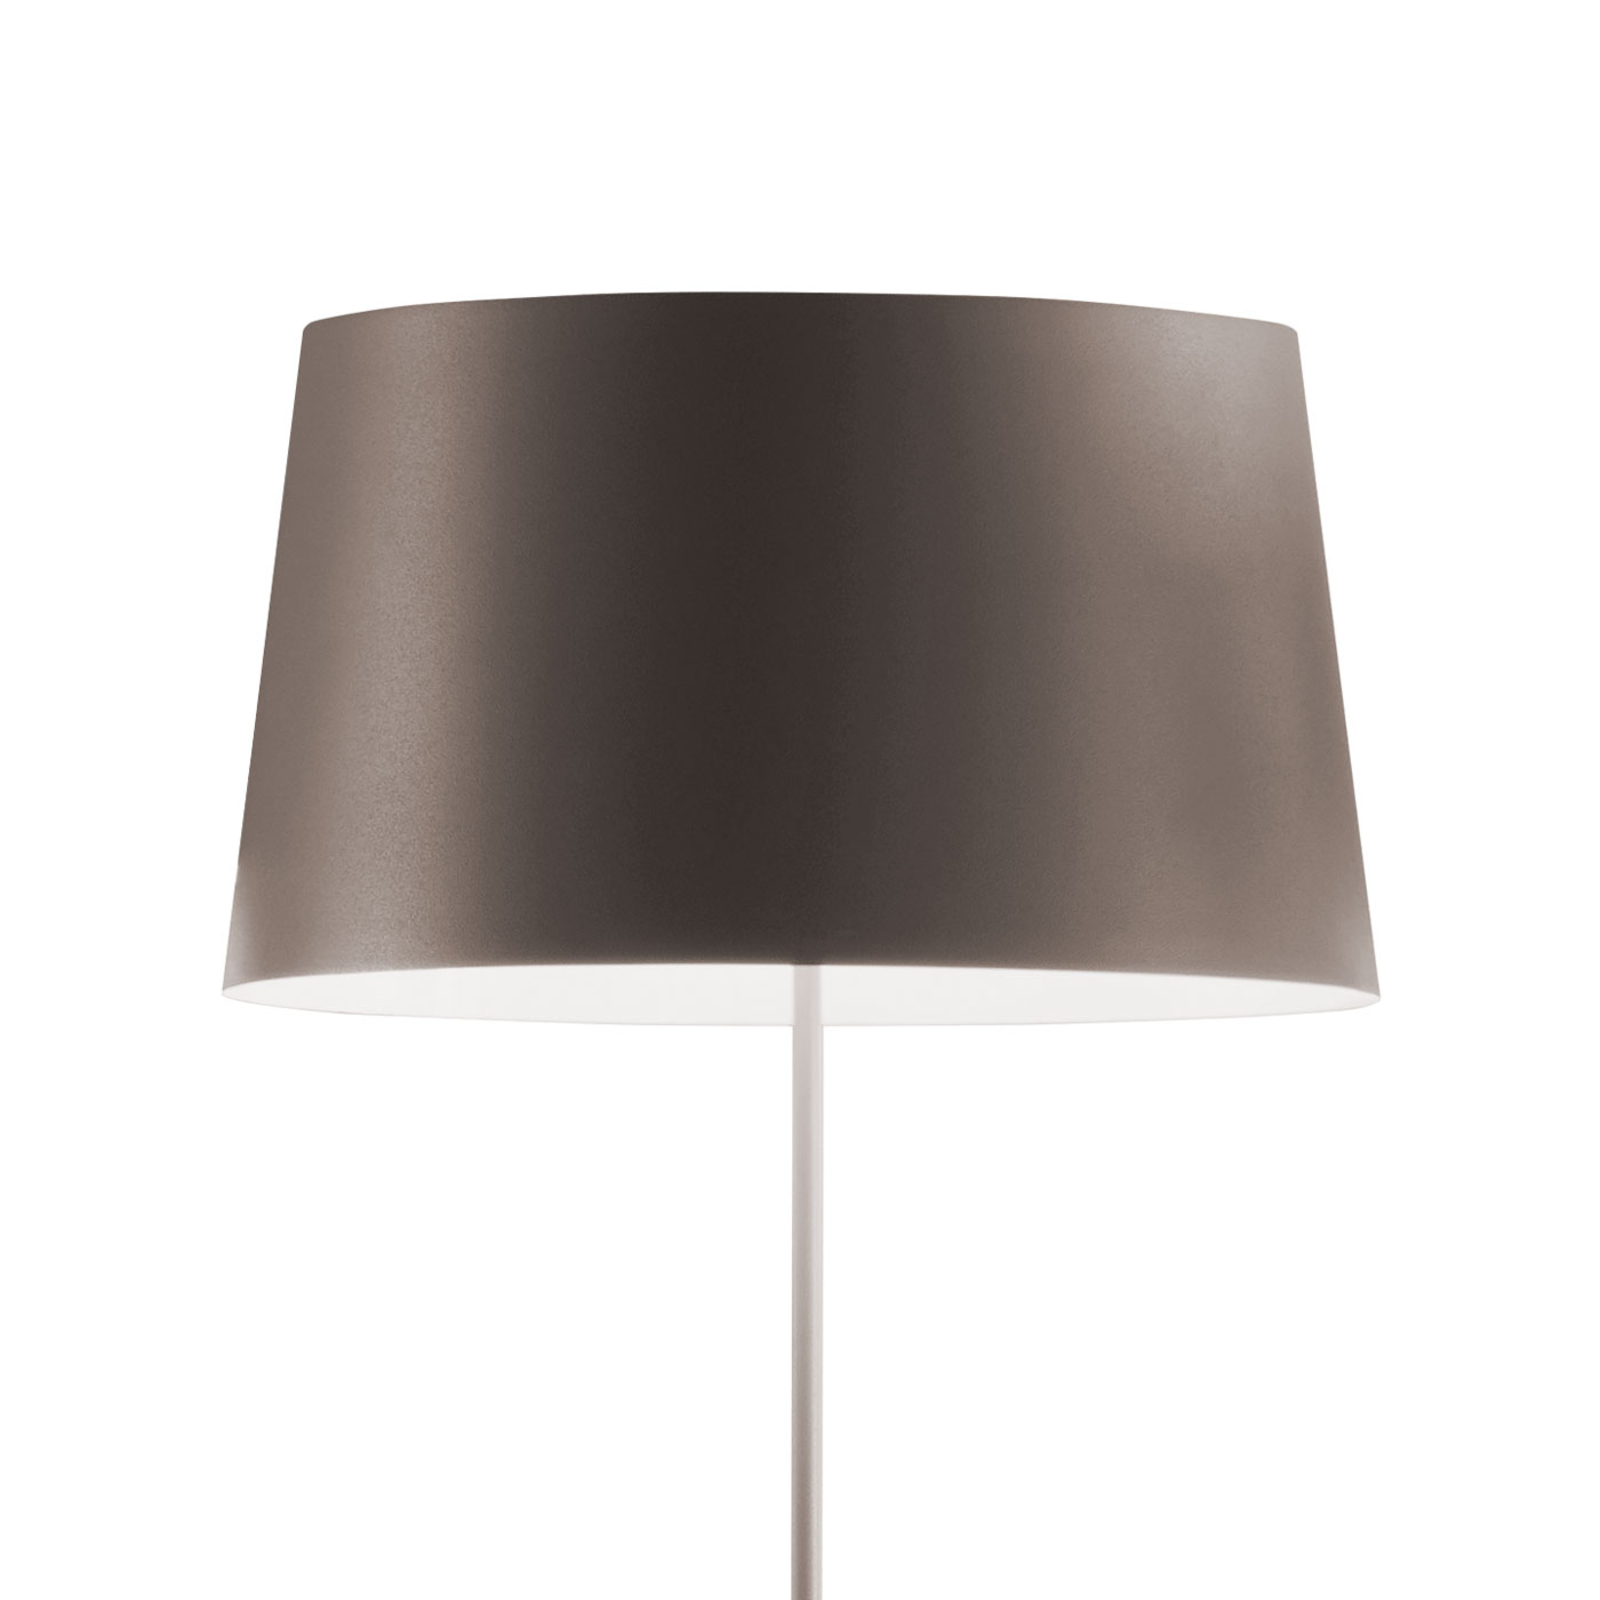 Vibia Warm 4906 designer floor lamp, beige